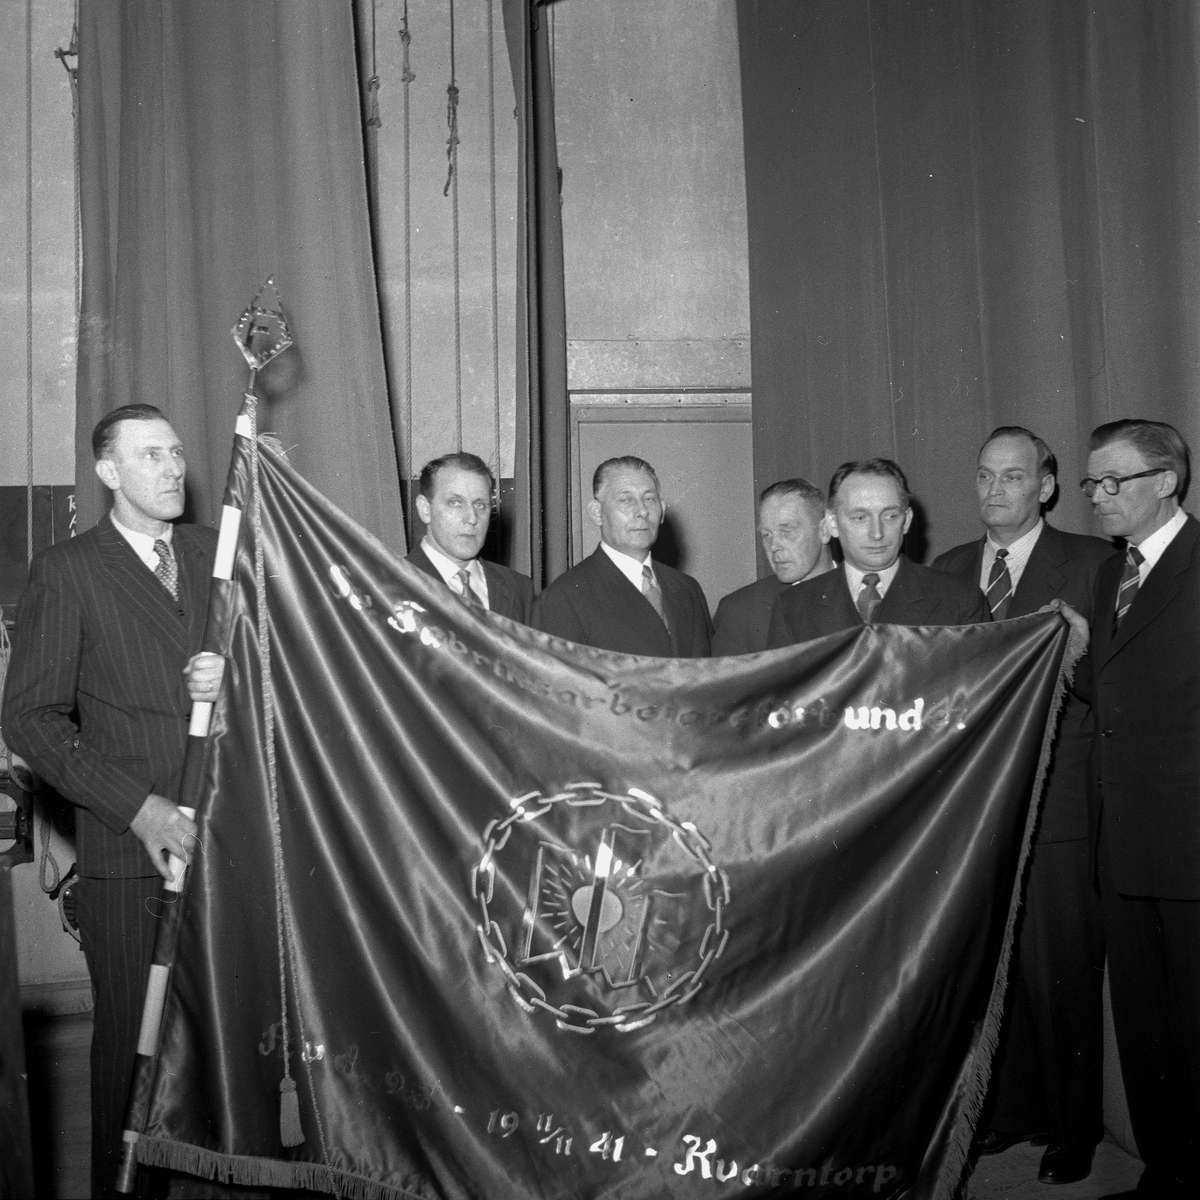 Kvarntorps fackförening inviger ny fana.
November 1956.